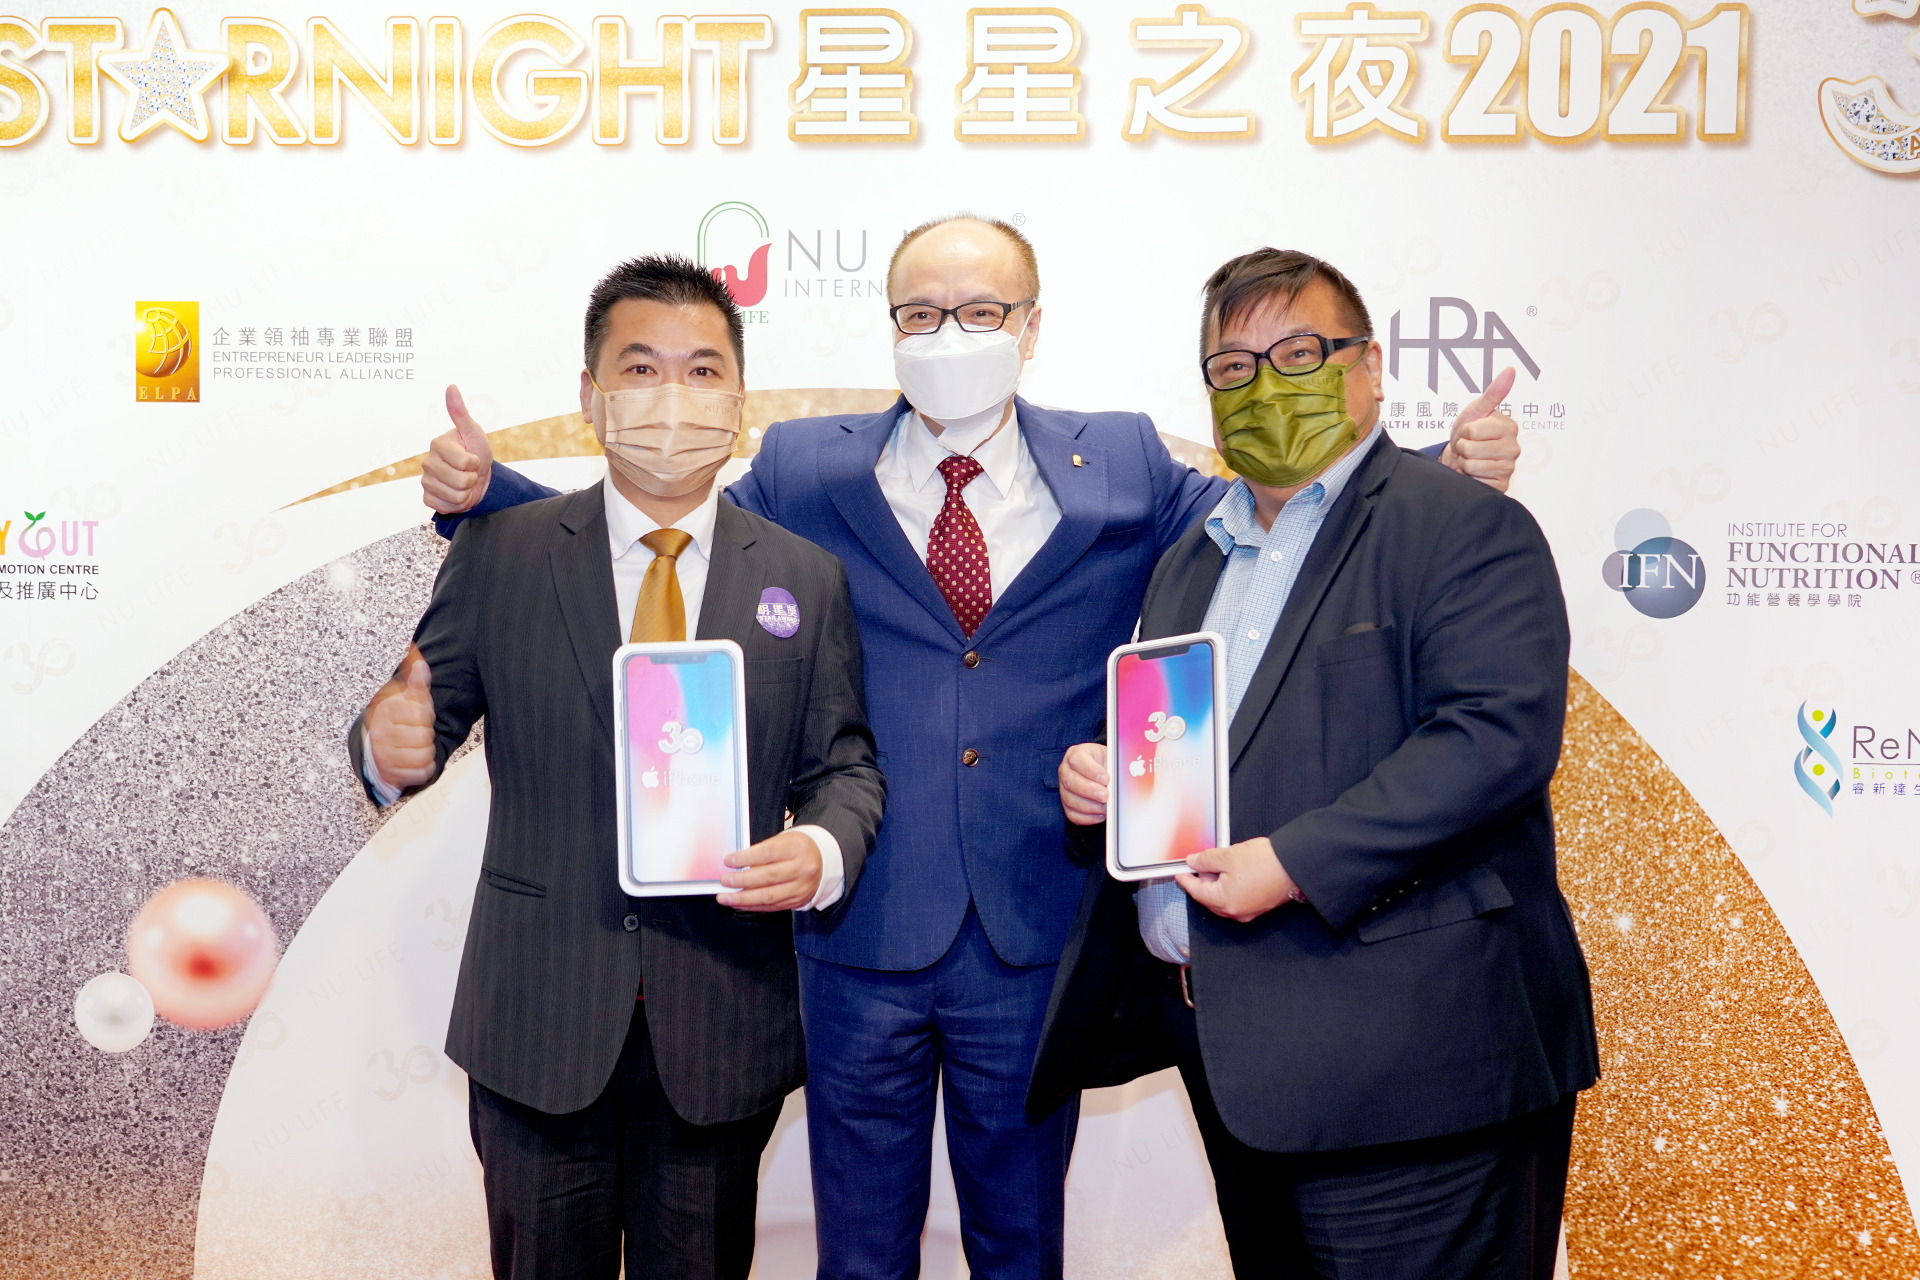 月月在Phone 月月送NU LIFE 30週年iphone 大抽獎得獎者 – 王世匡先生(左)及杜禮橋先生(右)